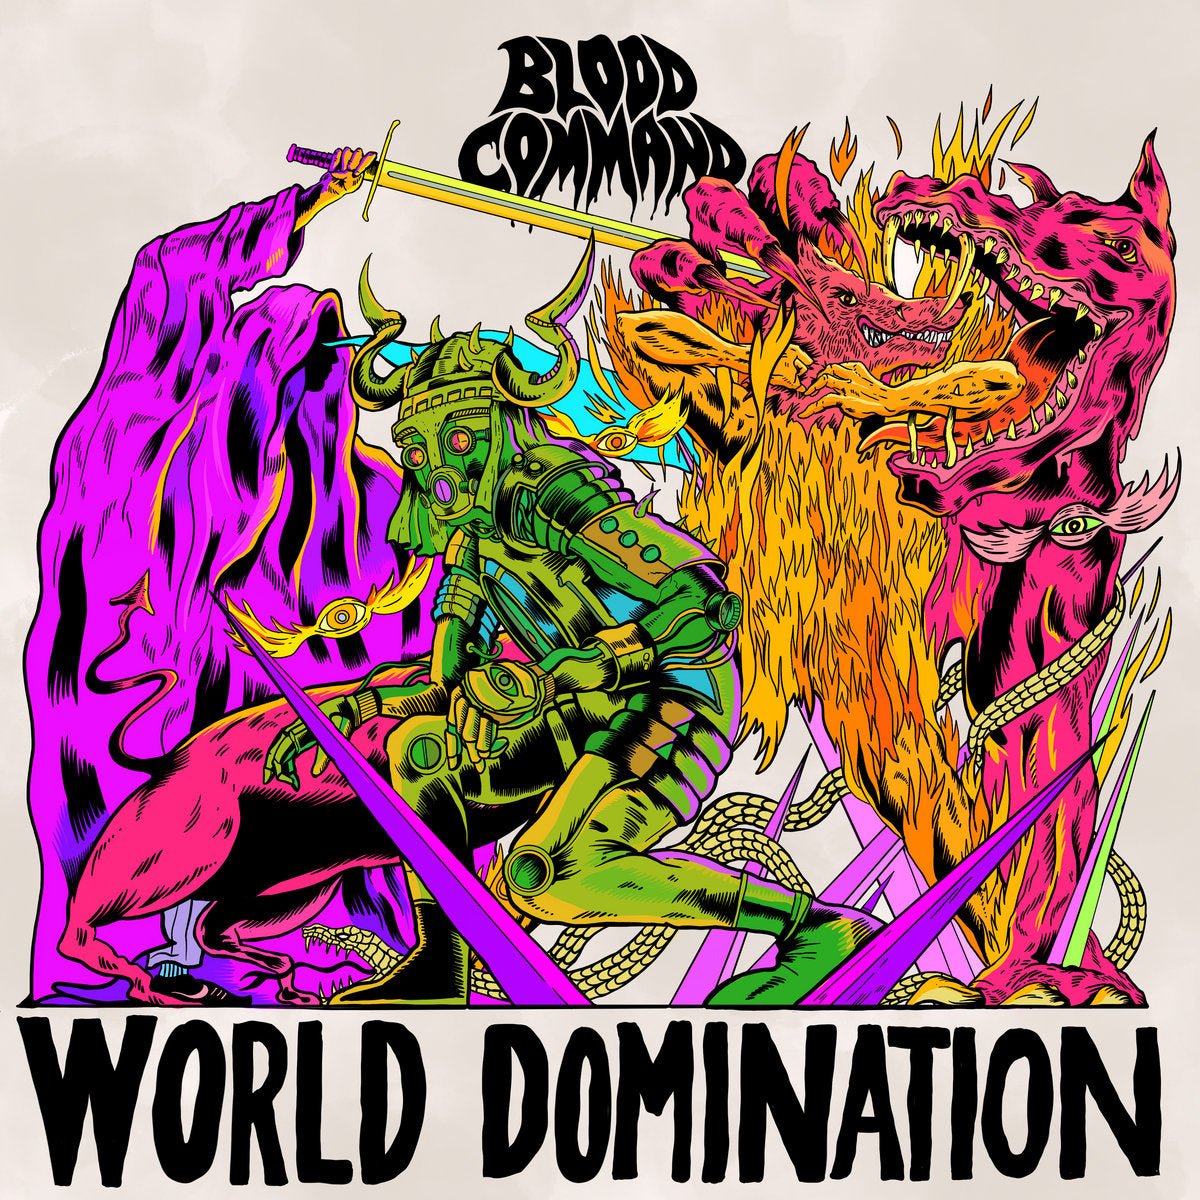 BLOOD COMMAND - World Domination - LP - Glow in the Dark Vinyl [JUN 14]